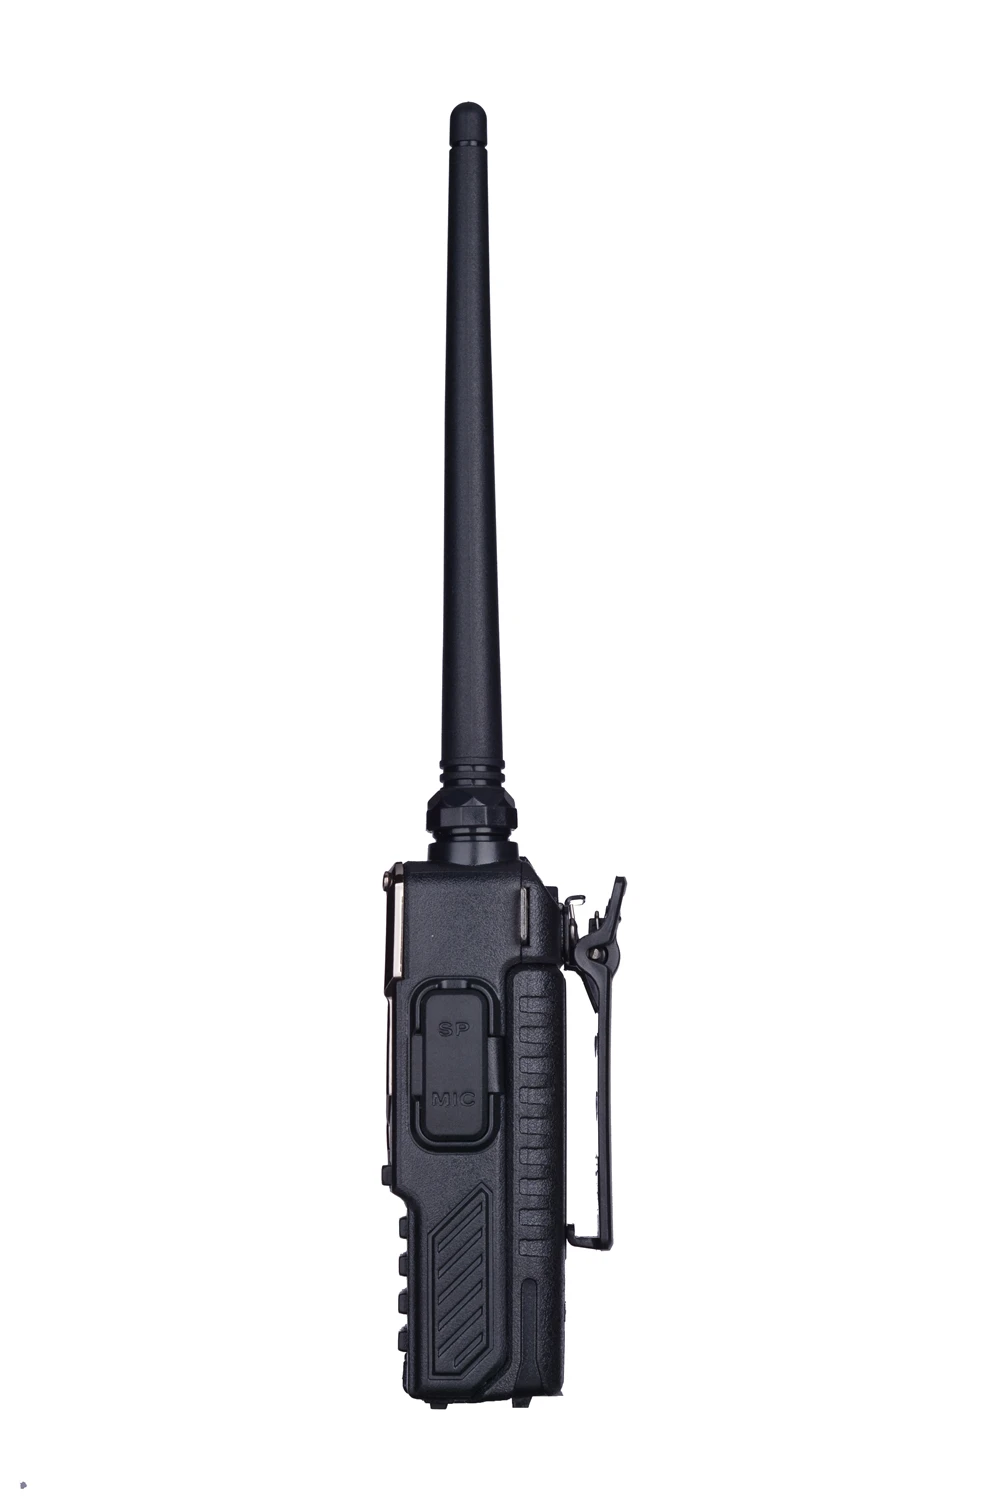 BaoFeng UV-5RE Walkie Talkie 10 км, UHF136-174Mhz и 400-520 мГц Dual Band двухстороннее радио UV-5R серии портативный Радиоприемник